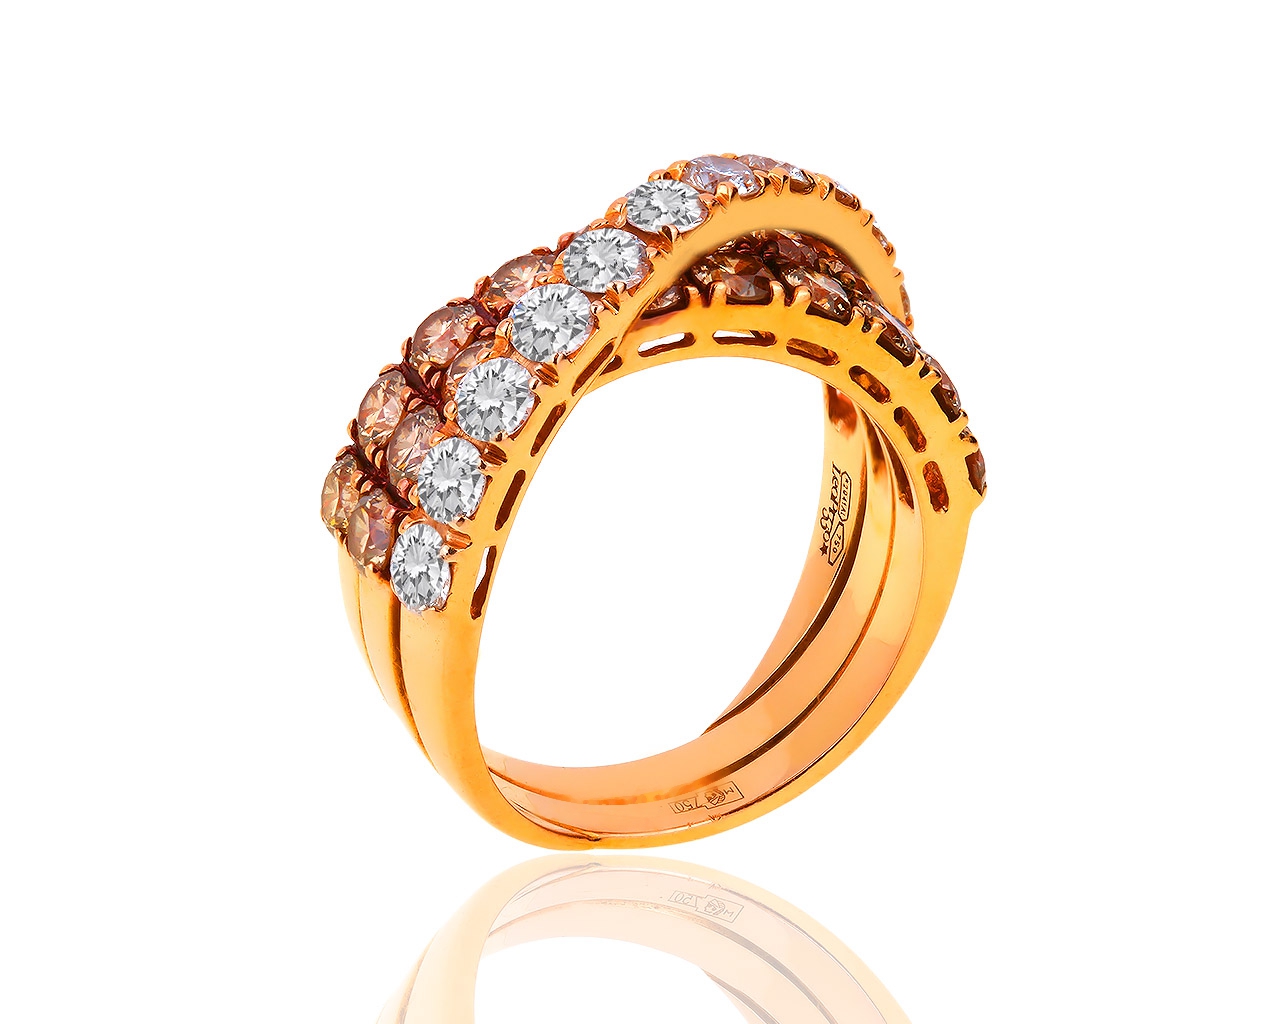 Оригинальное золотое кольцо с бриллиантами 2.65ct Leo Pizzo 010319/1